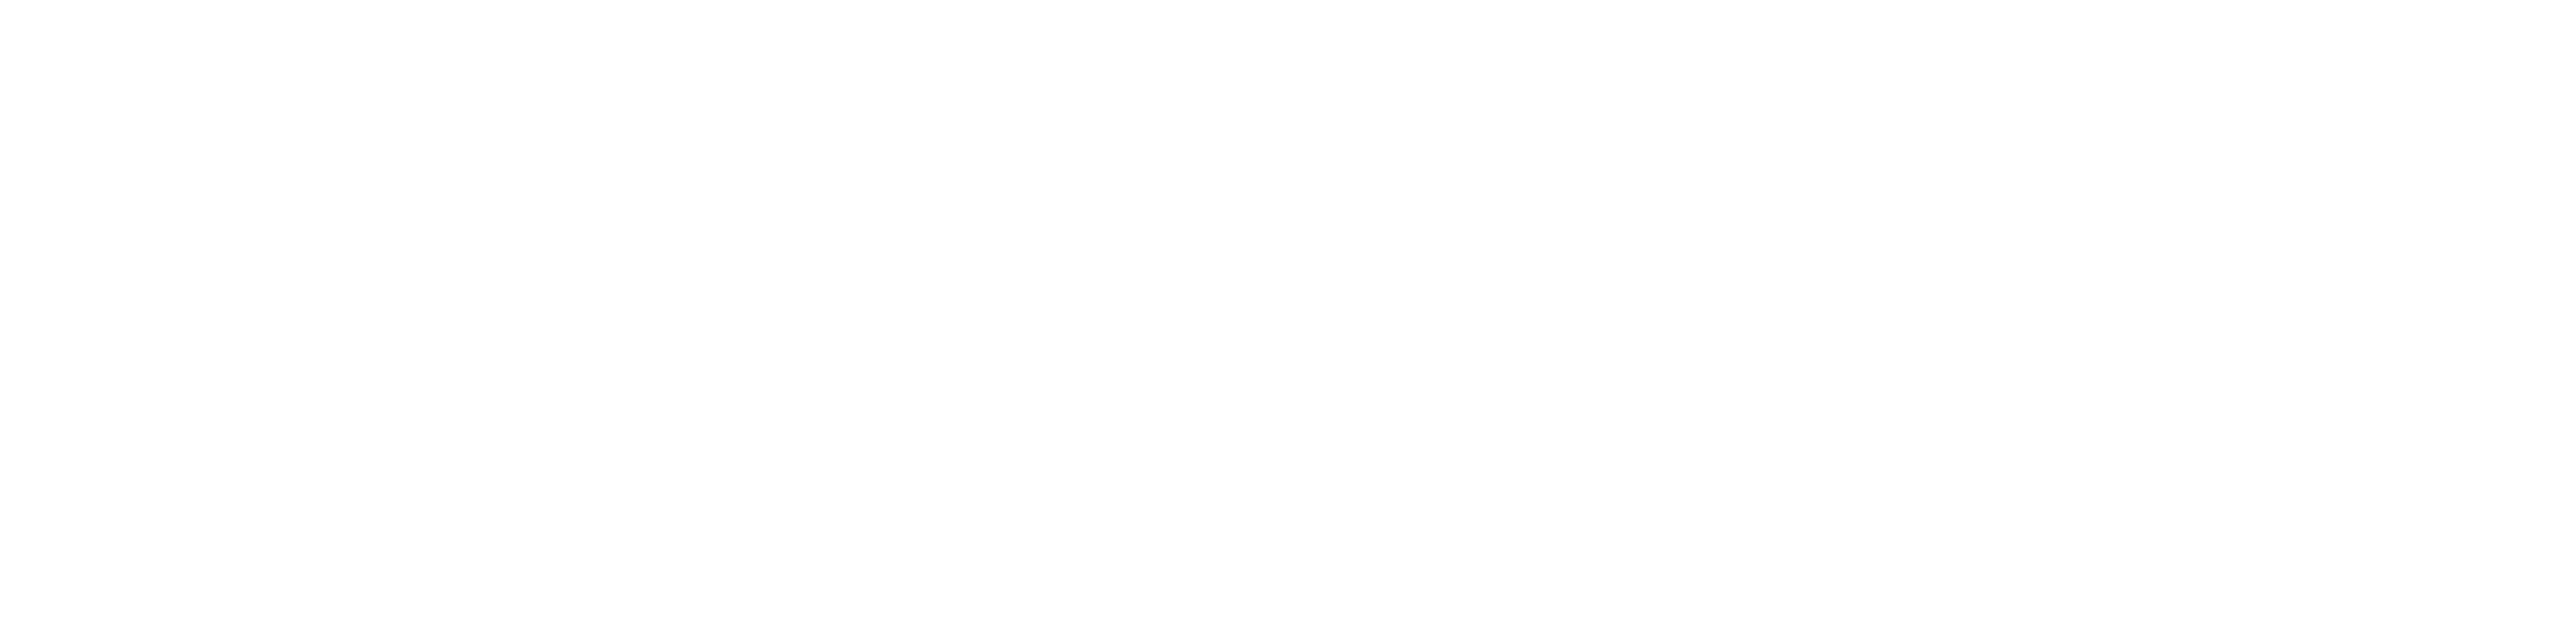 Logotipo_Secundario_VersionNegativo